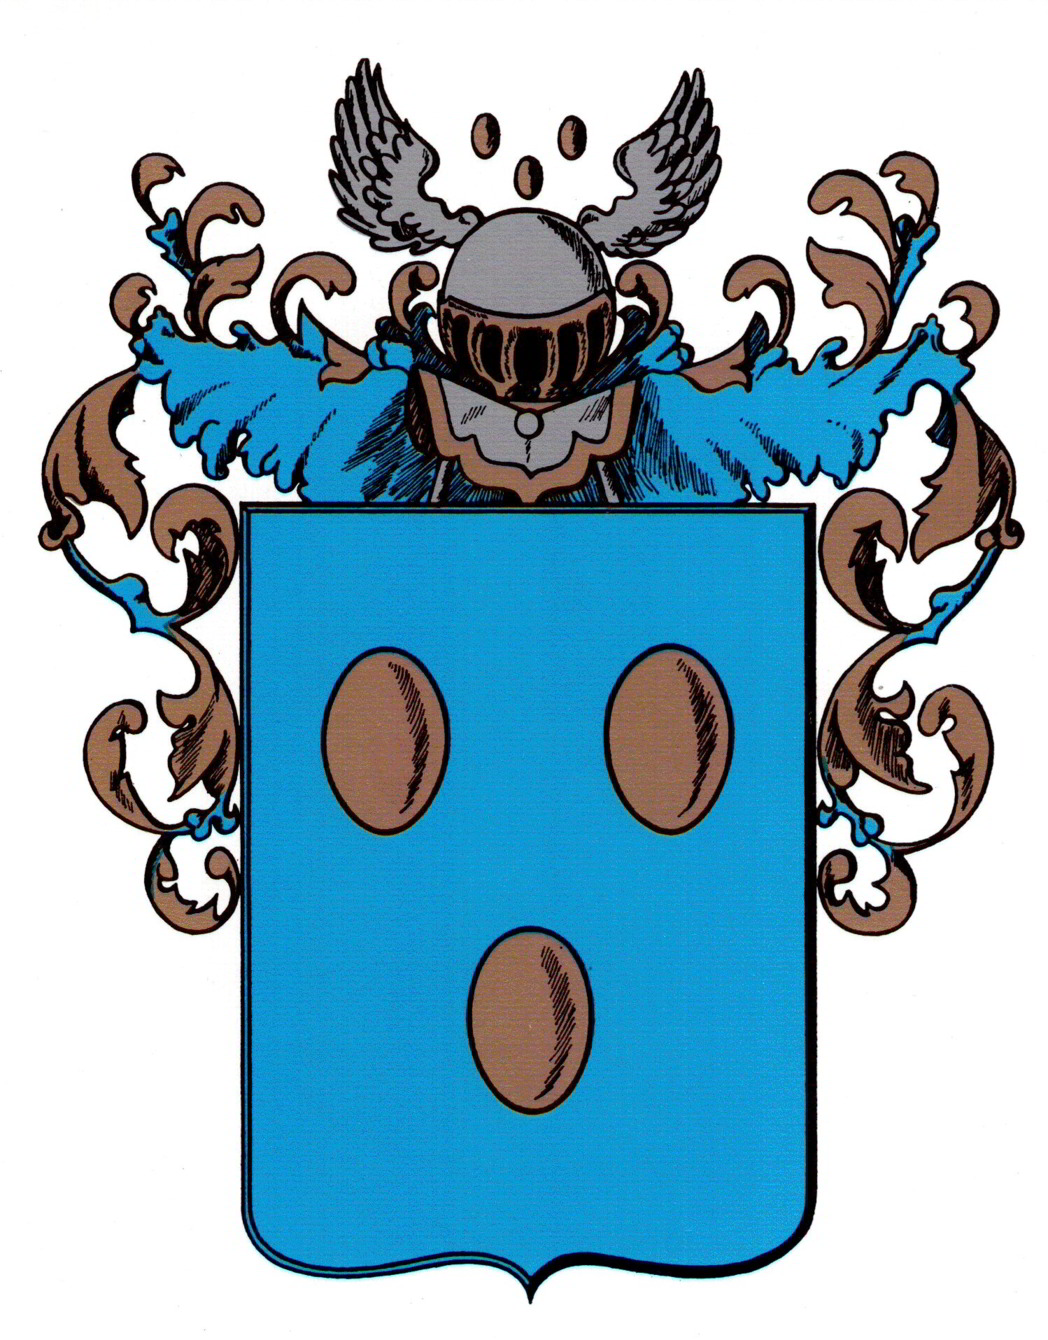 Het wapen van de gemeente Eibergen is rechtstreeks afgeleid van het oudere stadszegel. Alleen was de Hoge Raad van Adel, die het wapen in 1816 verleende, niet meer bekend met de oorspronkelijke kleuren van het wapen van de Heren van Borculo, waarvan het Eibergse wapen afgeleid was: rode bollen resp. eieren op een goudkleurige ondergrond.